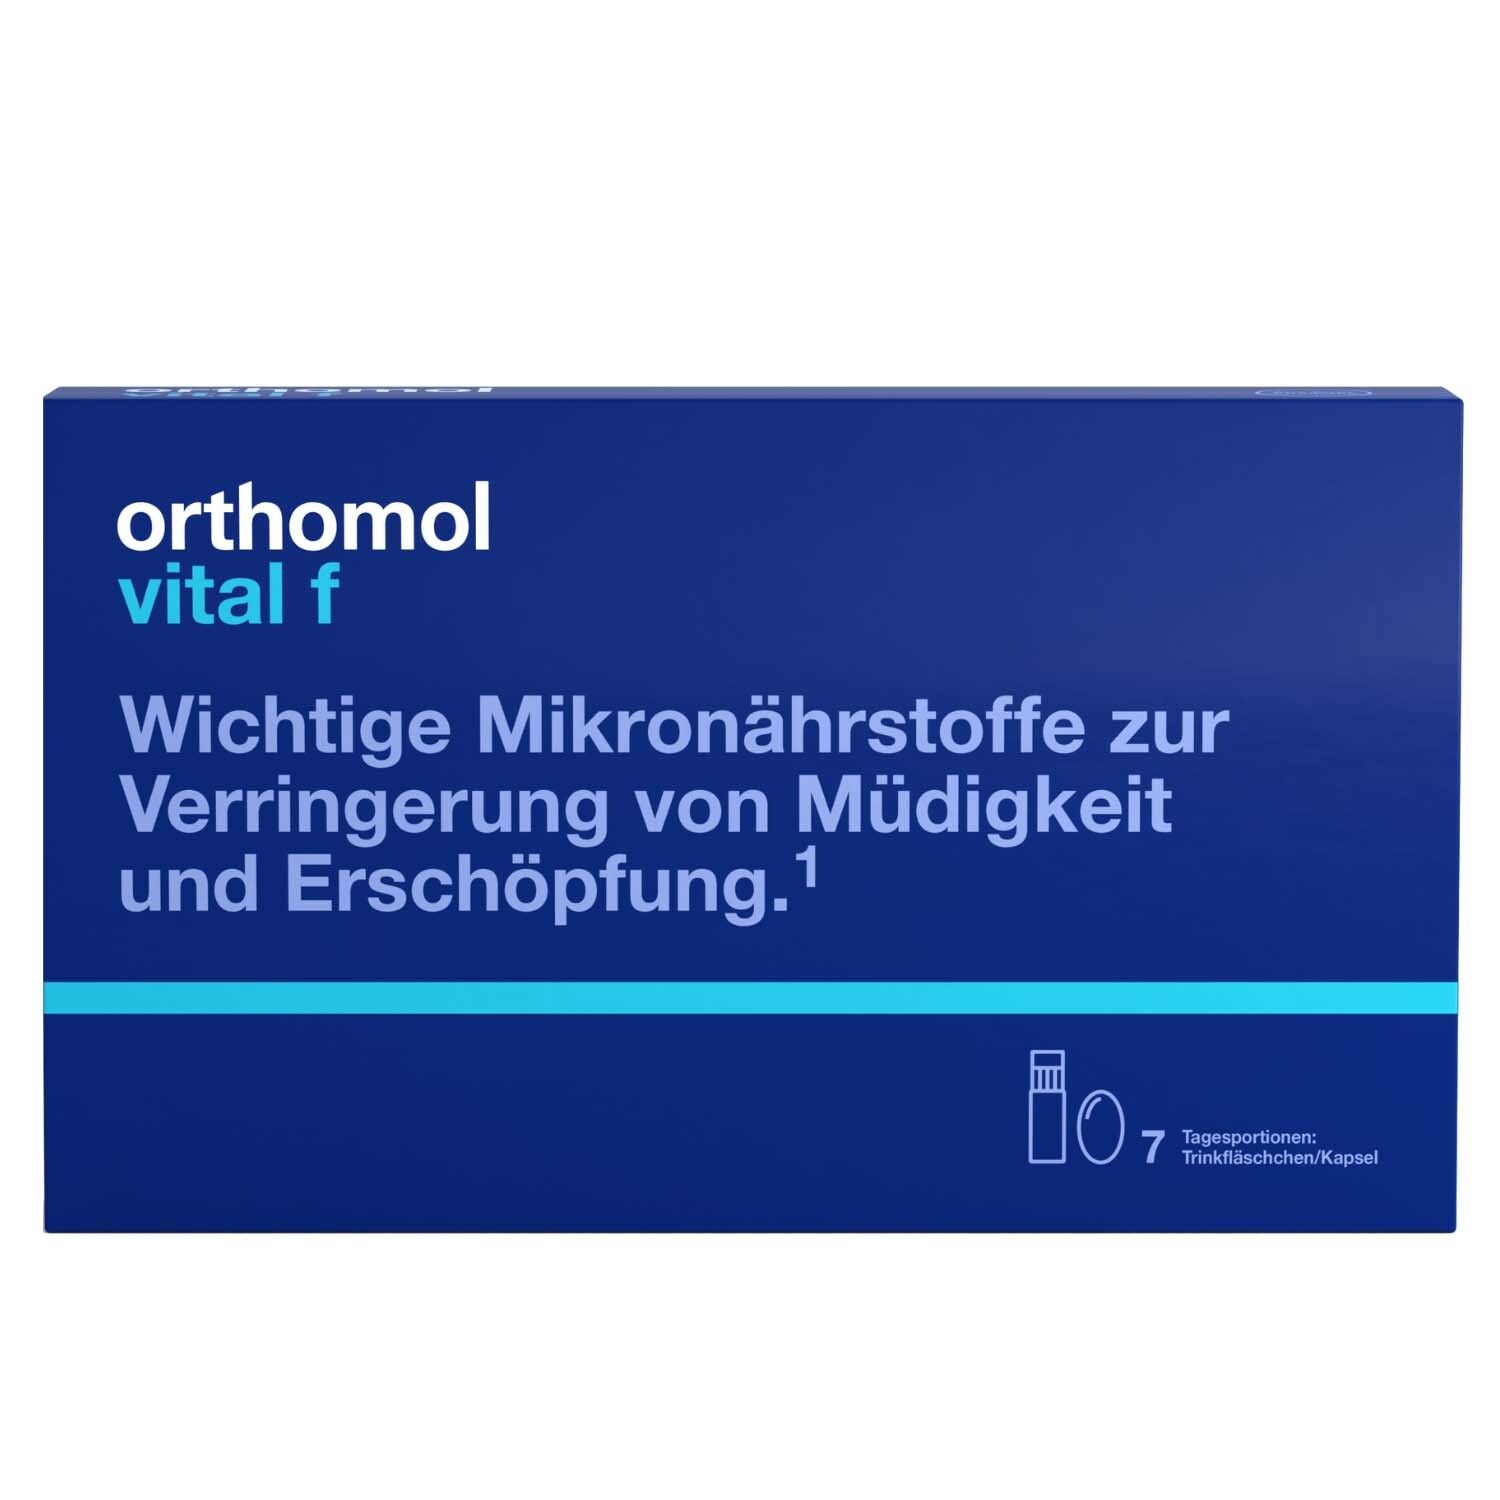 Orthomol Vital f Trinkfläschchen/Kapseln